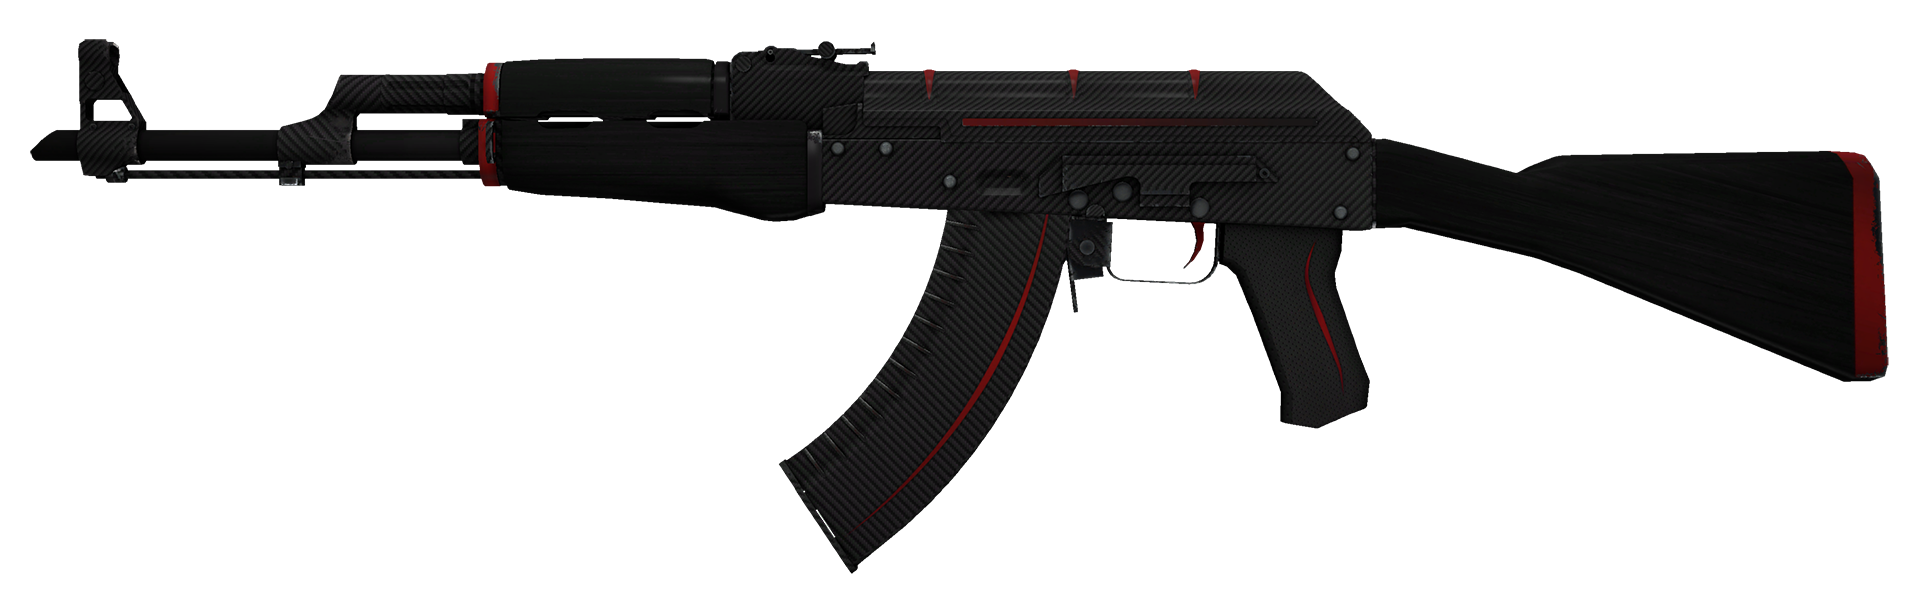 AK-47 Redline Large Rendering